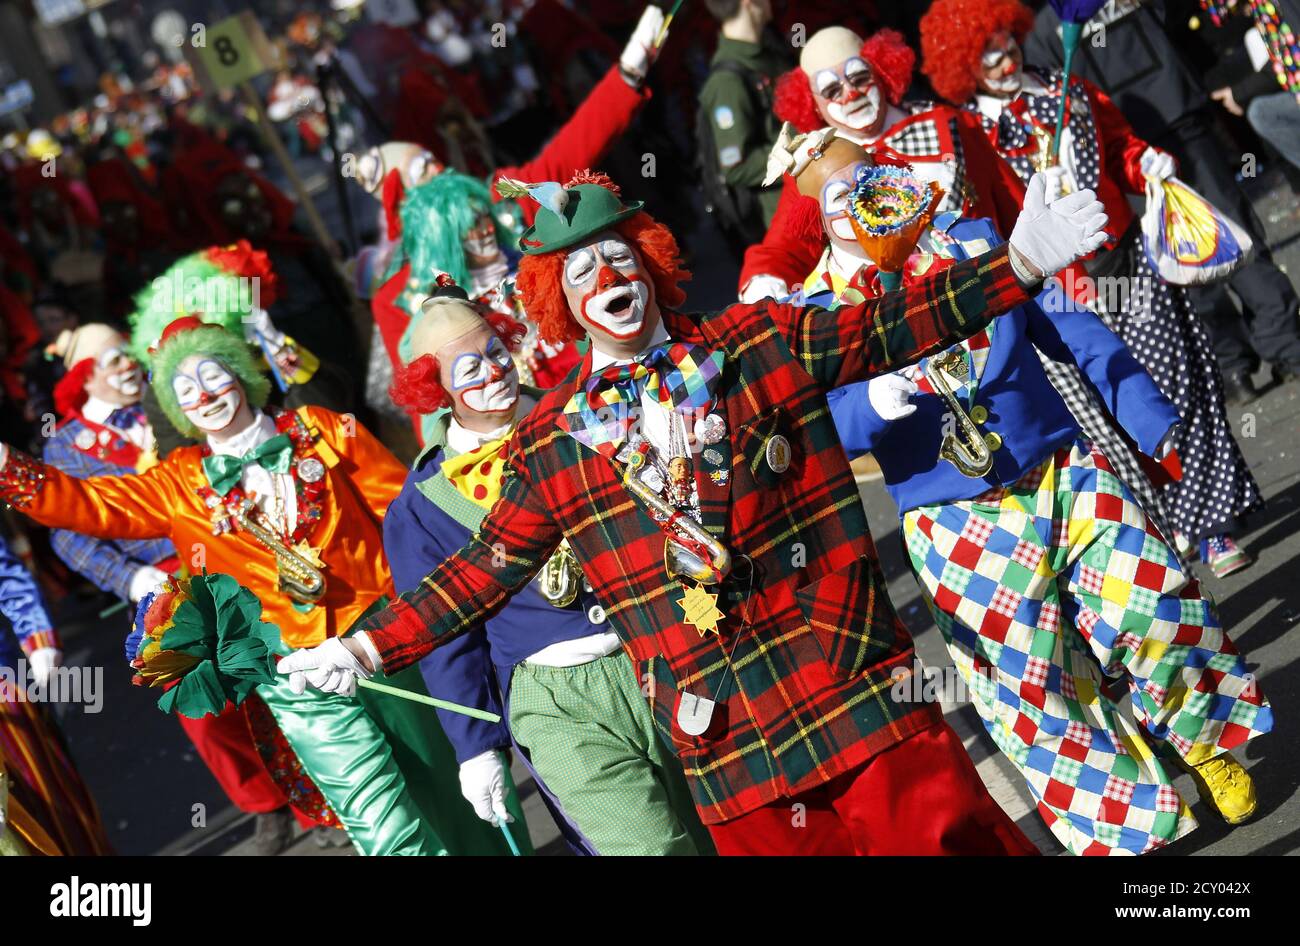 Eine Gruppe von Jecken verkleidet als Clowns den traditionellen Rose Montag Straße Karnevalsumzug in Mainz, 7. März 2011 führen. Die Rose Montag Paraden in Köln, Mainz und Düsseldorf sind das Highlight der deutschen Karnevalssaison.    REUTERS/Kai Pfaffenbach (Deutschland - Tags: Gesellschaft, Unterhaltung) Stockfoto